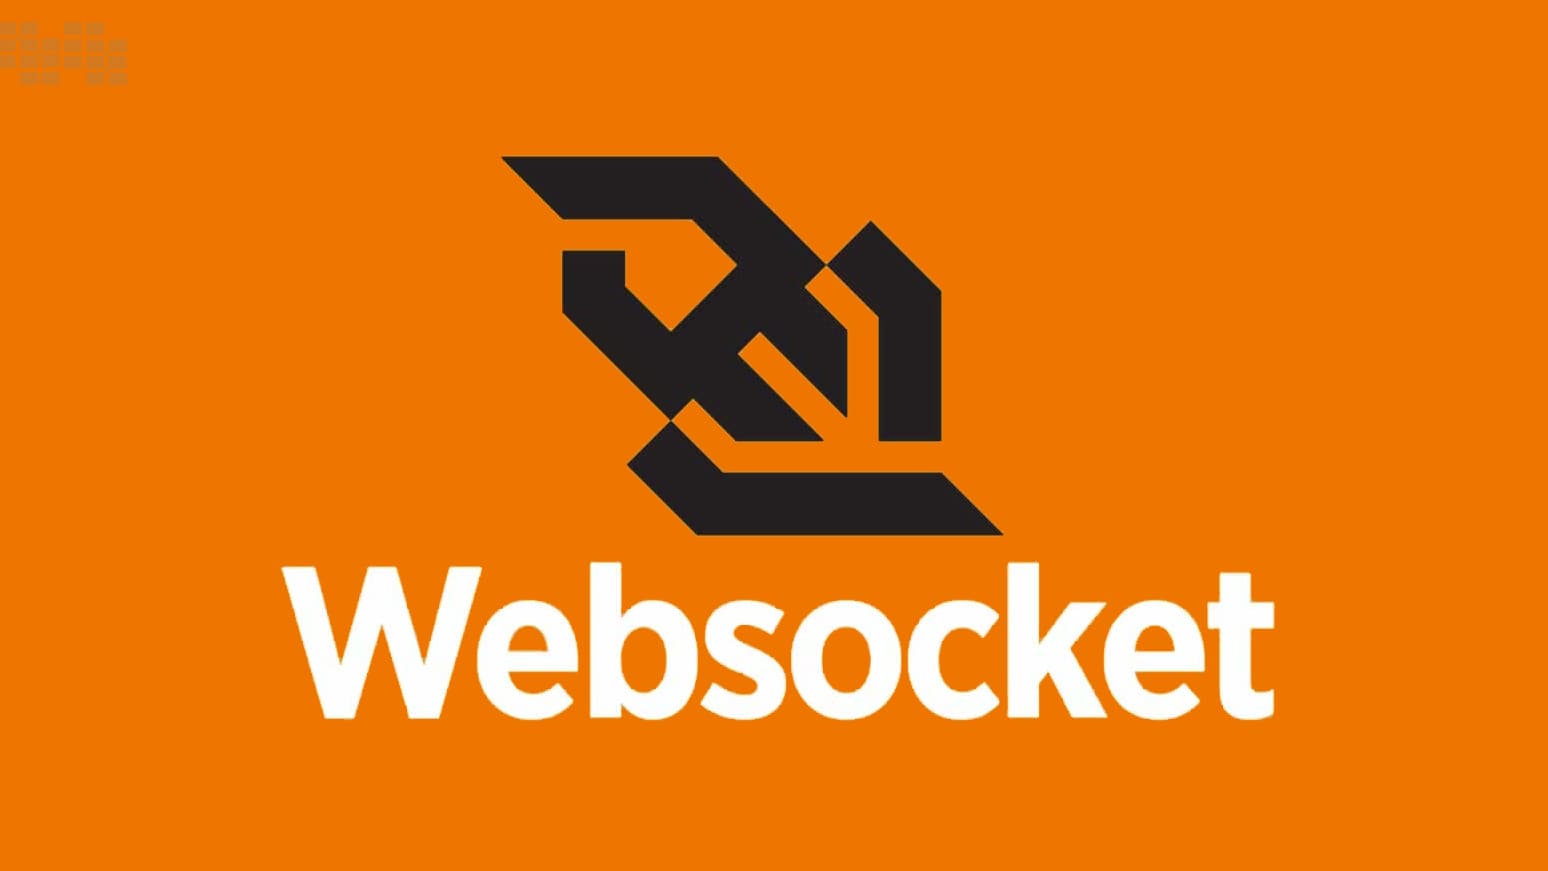 Koajs 集成 Websocket 的详细步骤，并与客户端建立链接与通信